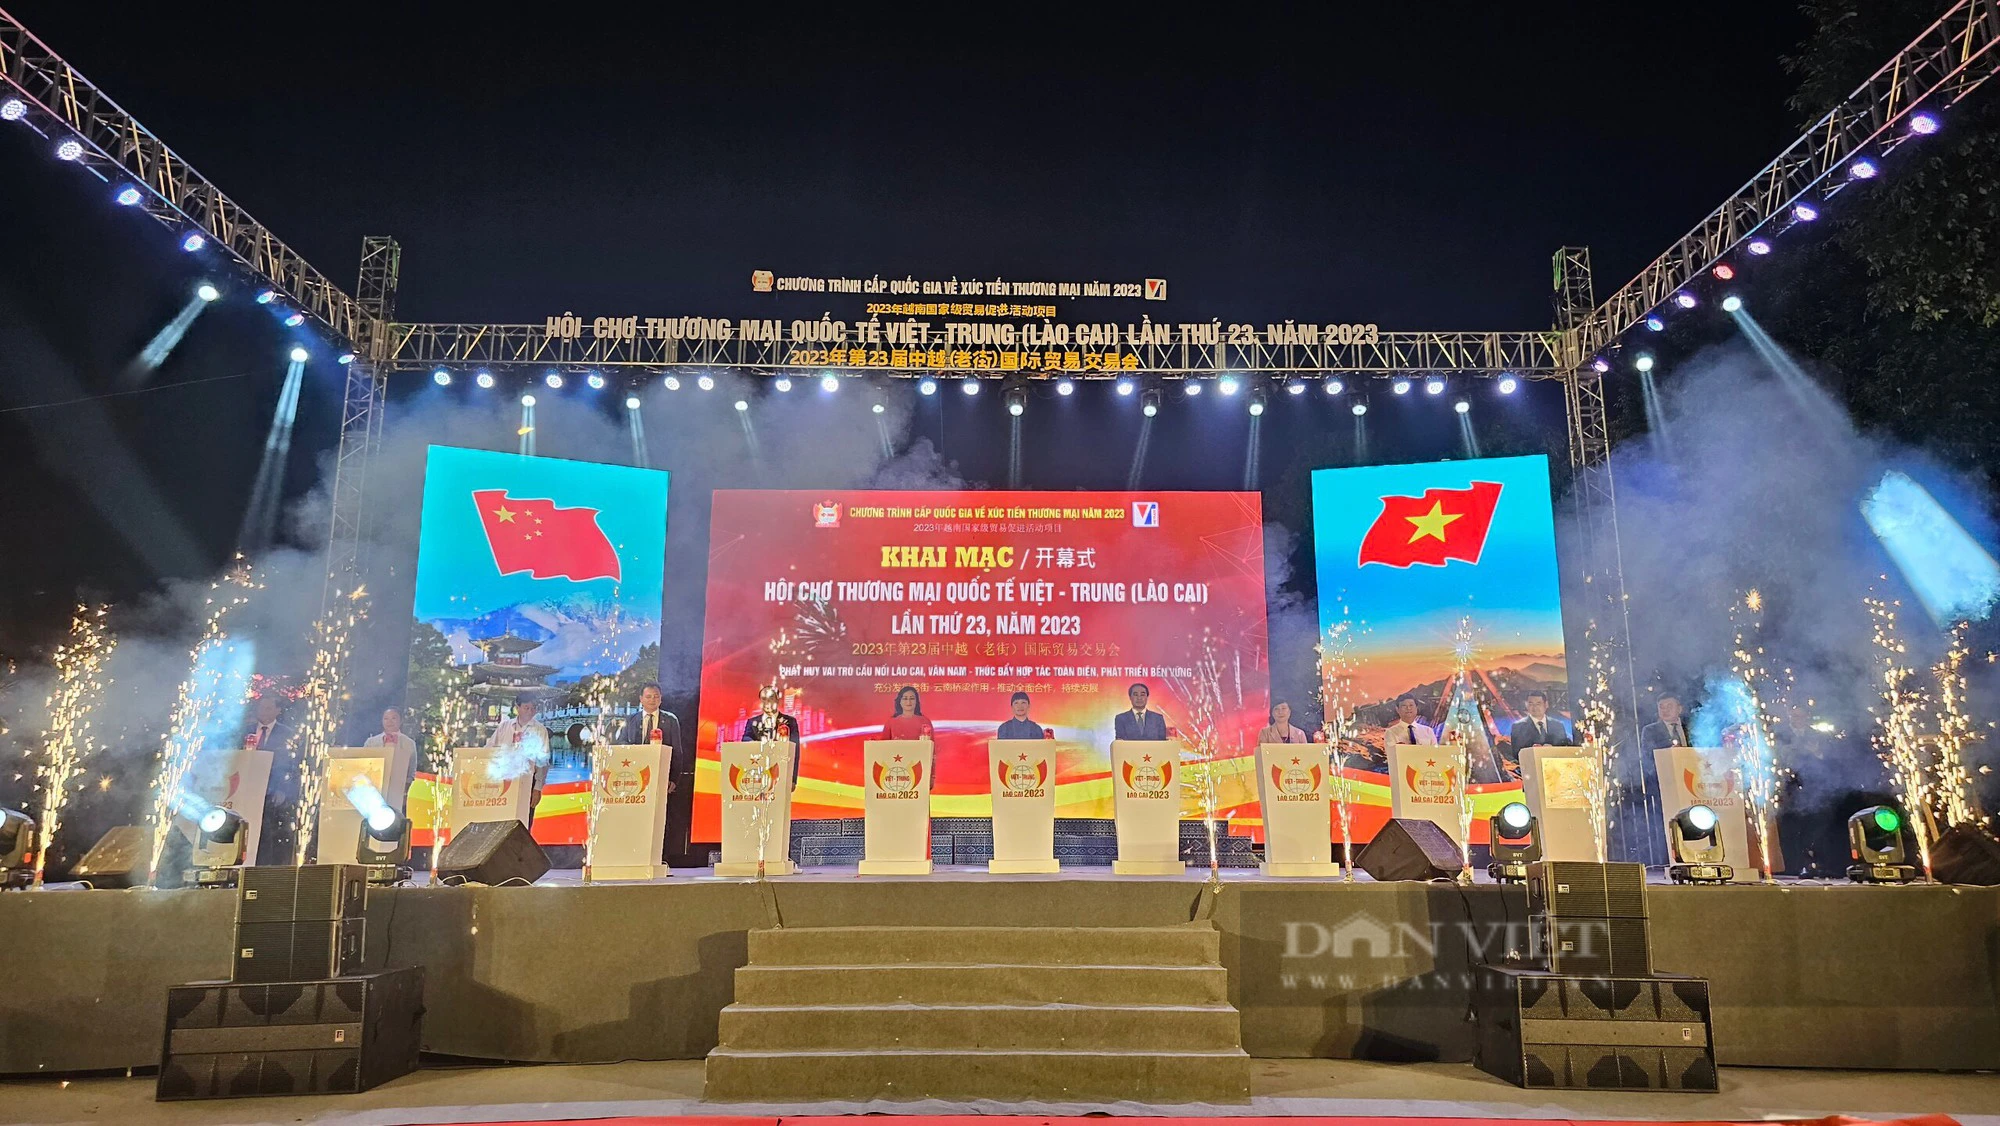 Hội chợ Thương mại quốc tế Việt - Trung tại Lào Cai thúc đẩy hợp tác toàn diện- Phát triển bền vững - Ảnh 1.